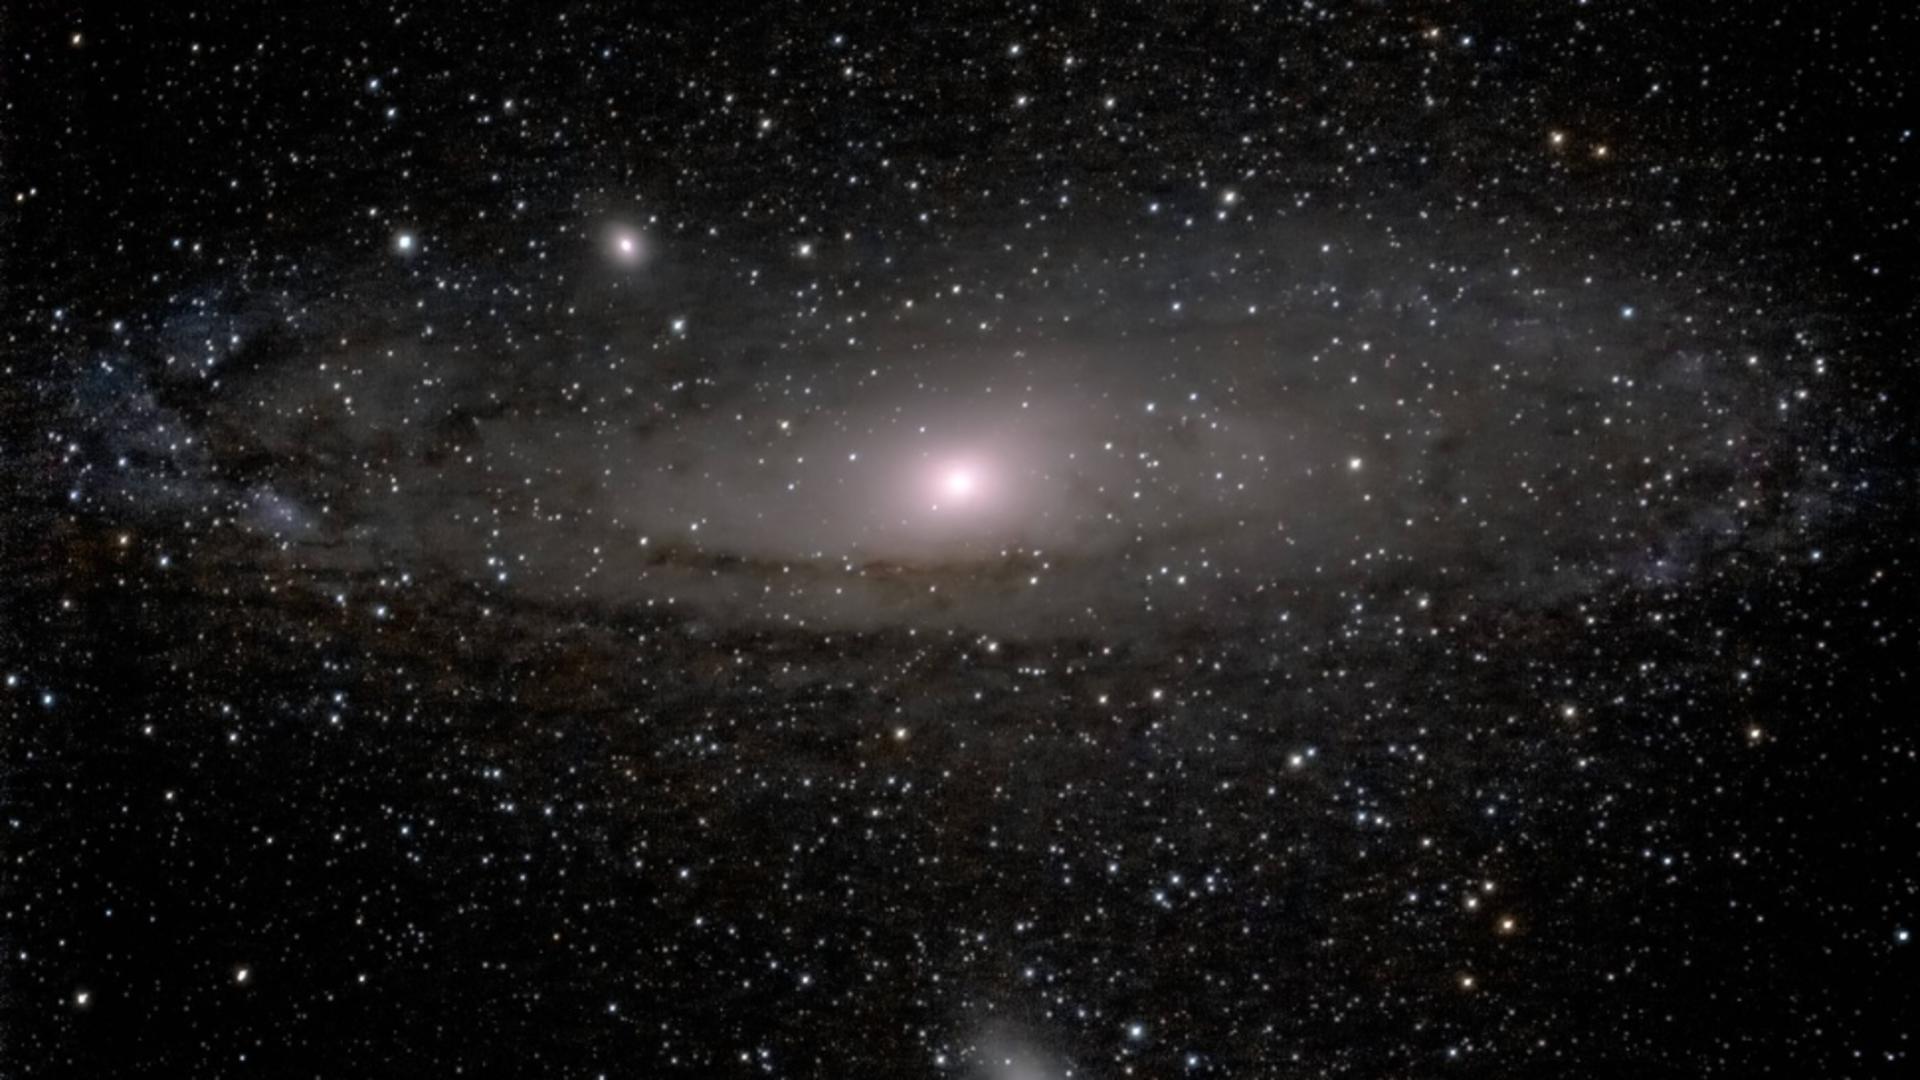 Galaxia Andromeda ar avea o lungime de 2,5 milioane de ani-lumină (Profimedia)